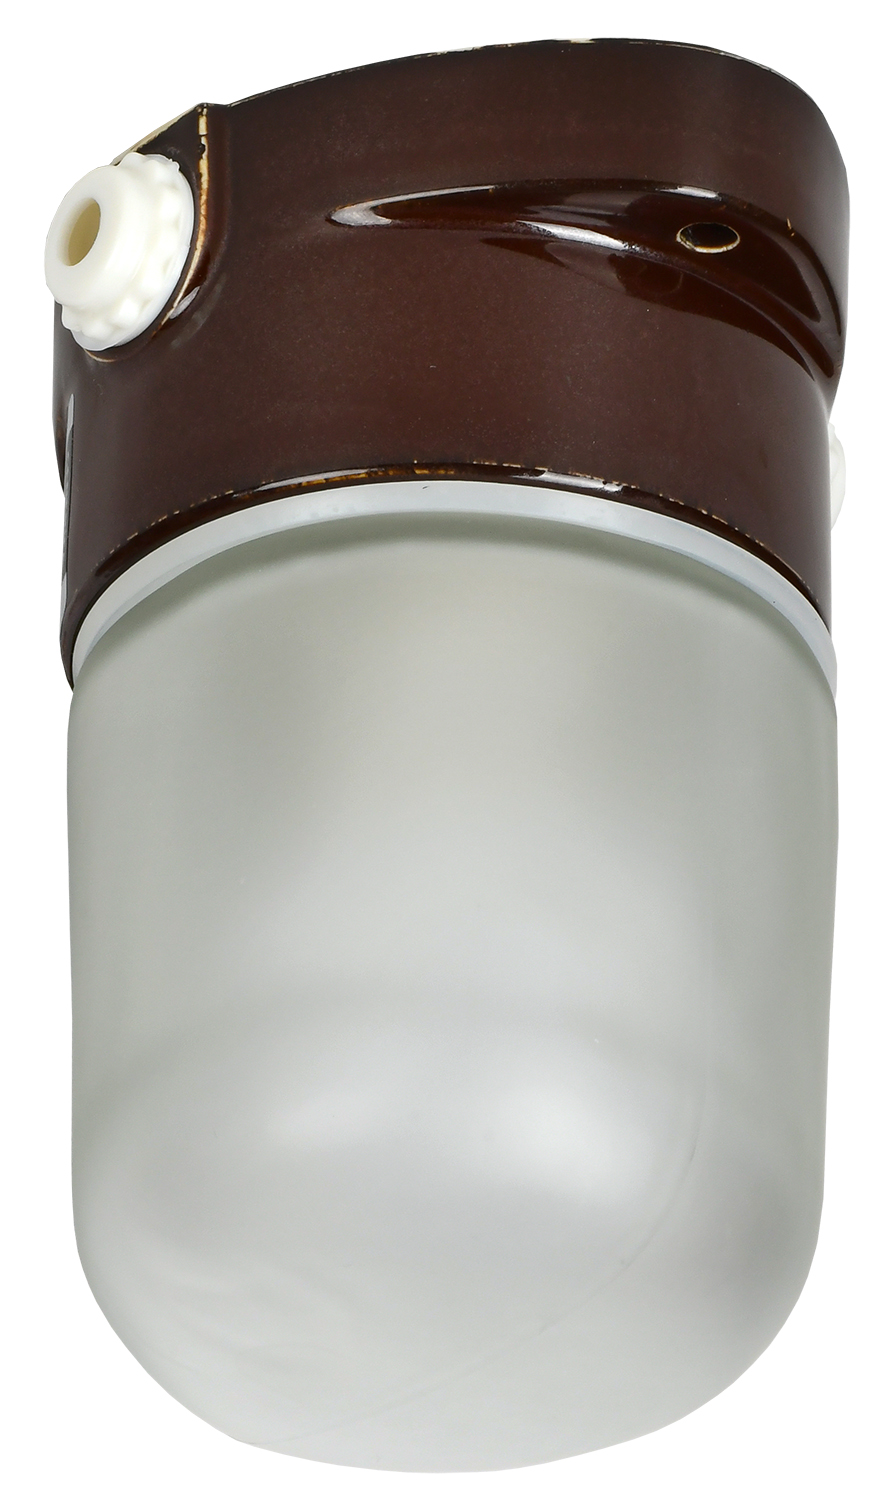 TERMA Светильник термостойкий для бани и сауны НПБ 450-2 IP54 60Вт коричневый GENERICA